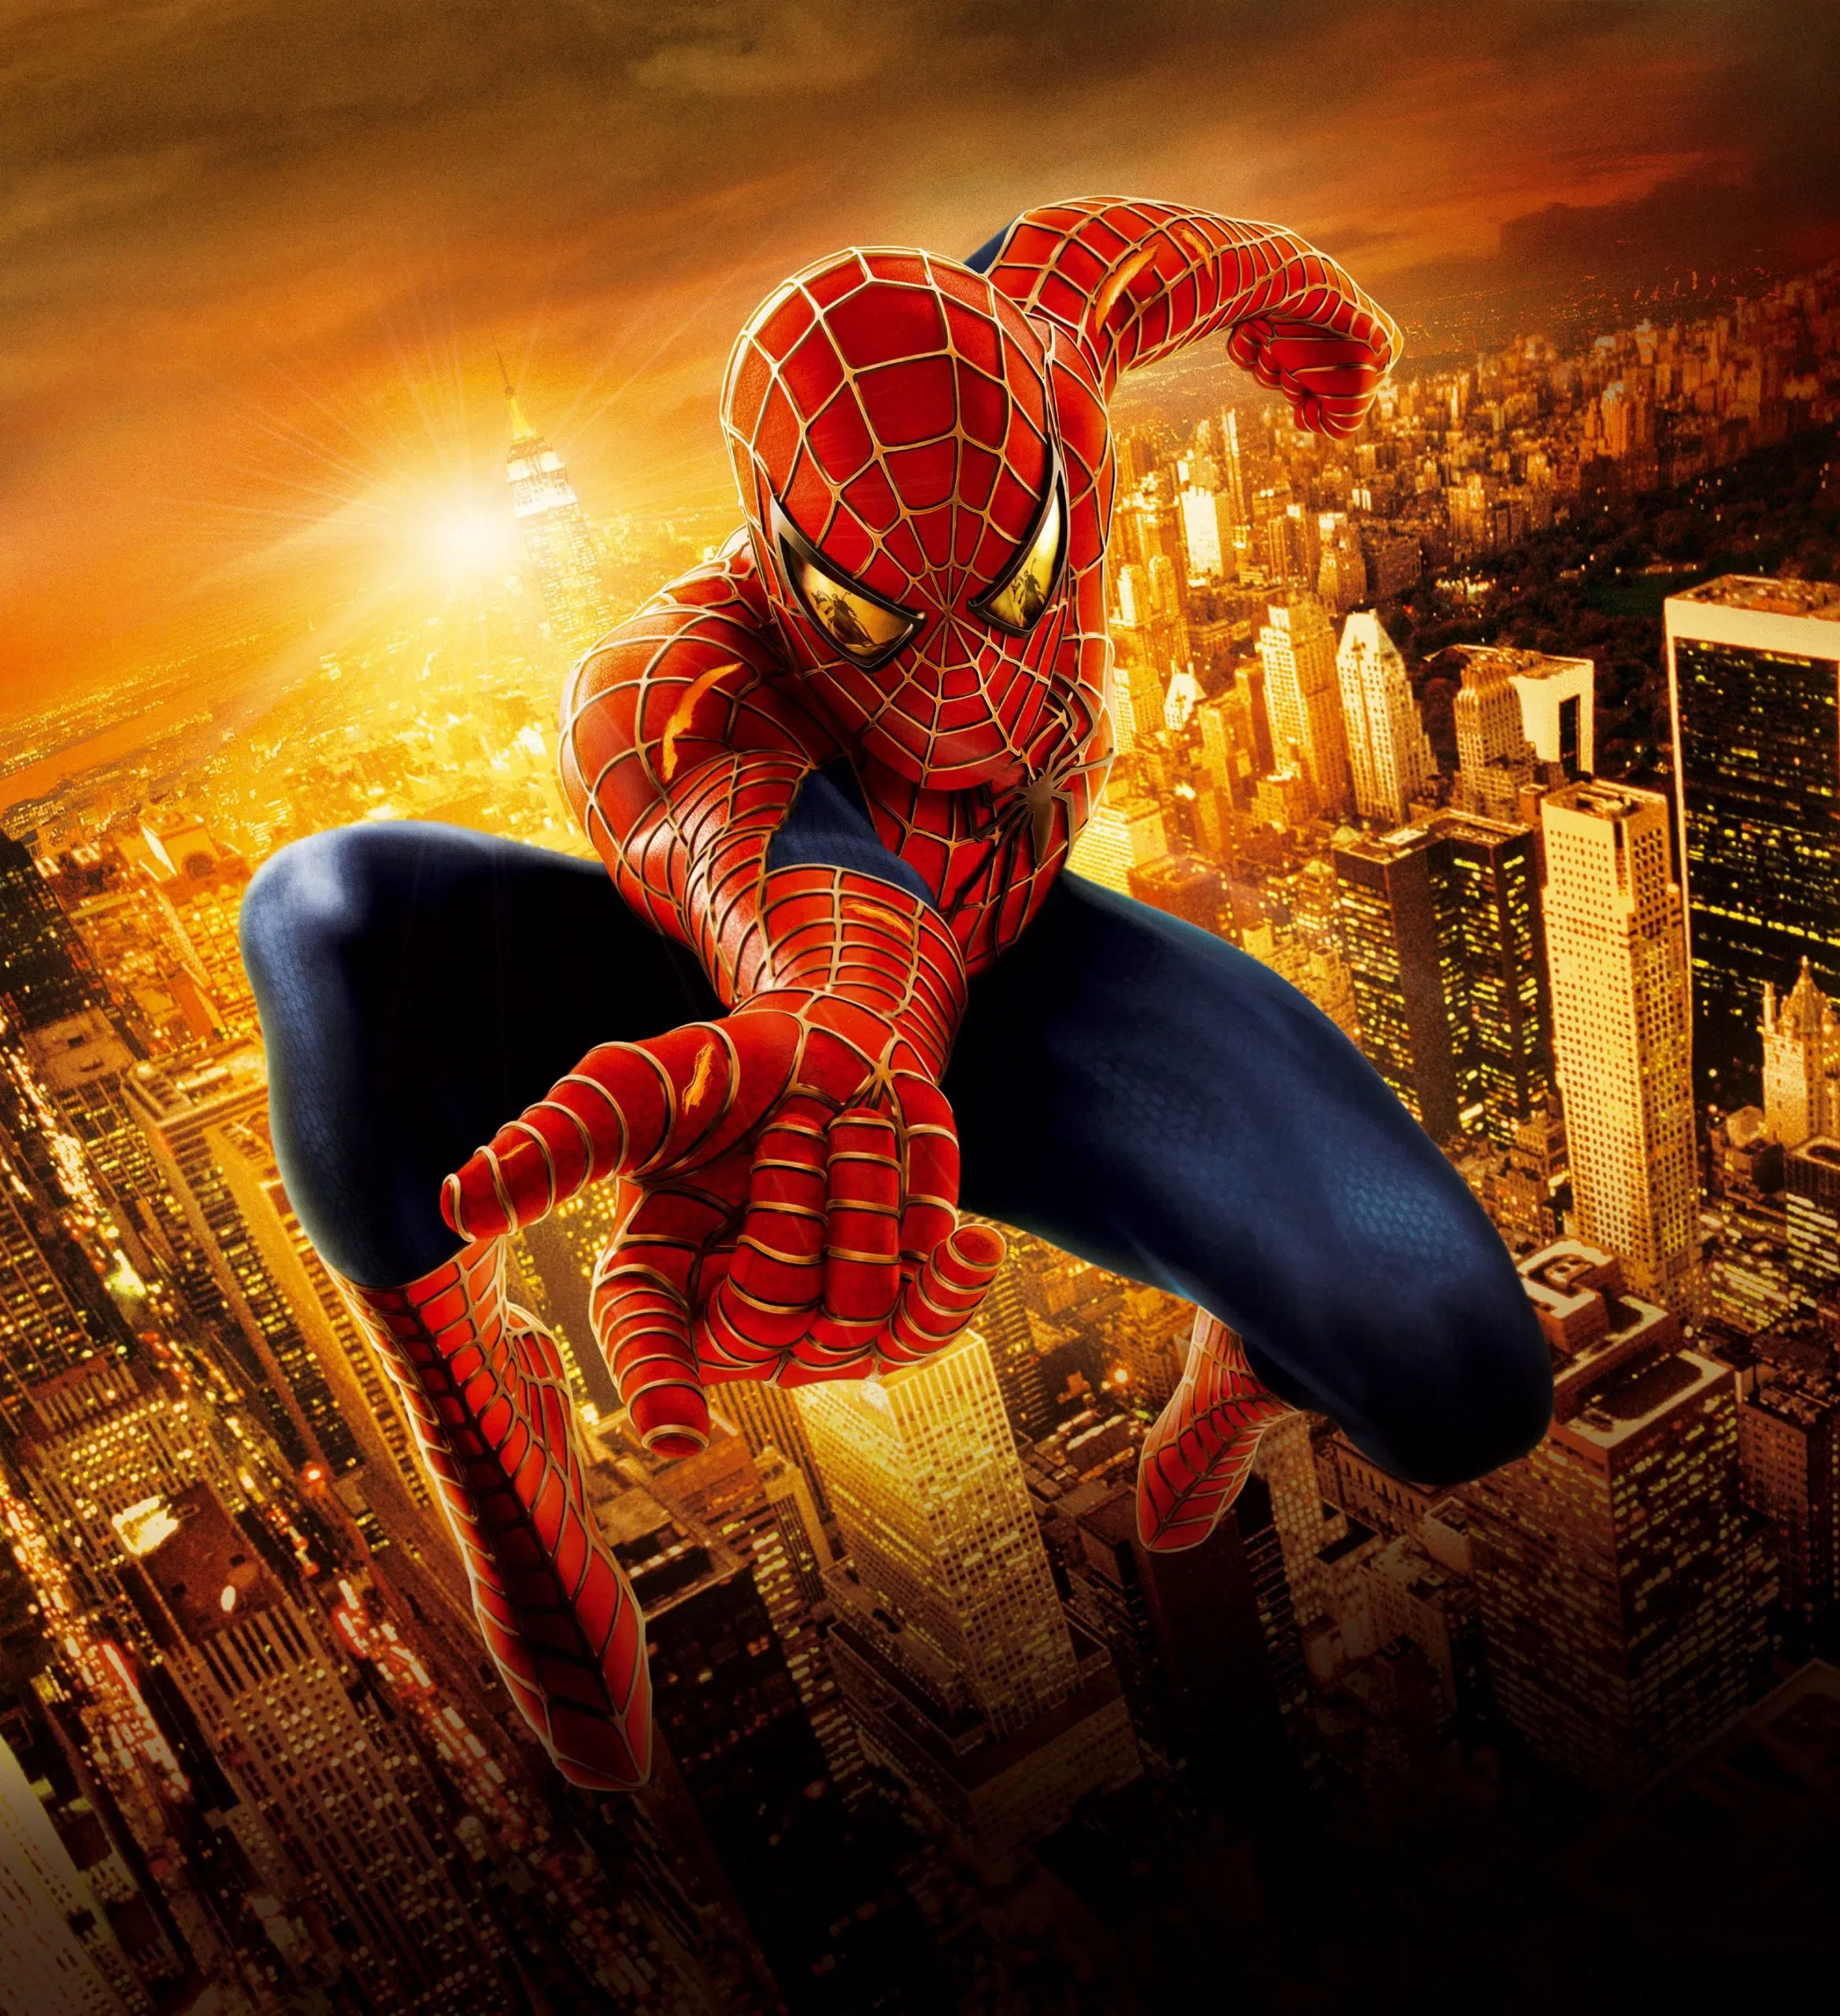 SPIDER-MAN 2 2004 Movie Poster Tobey Maguire SPIDERMAN 2